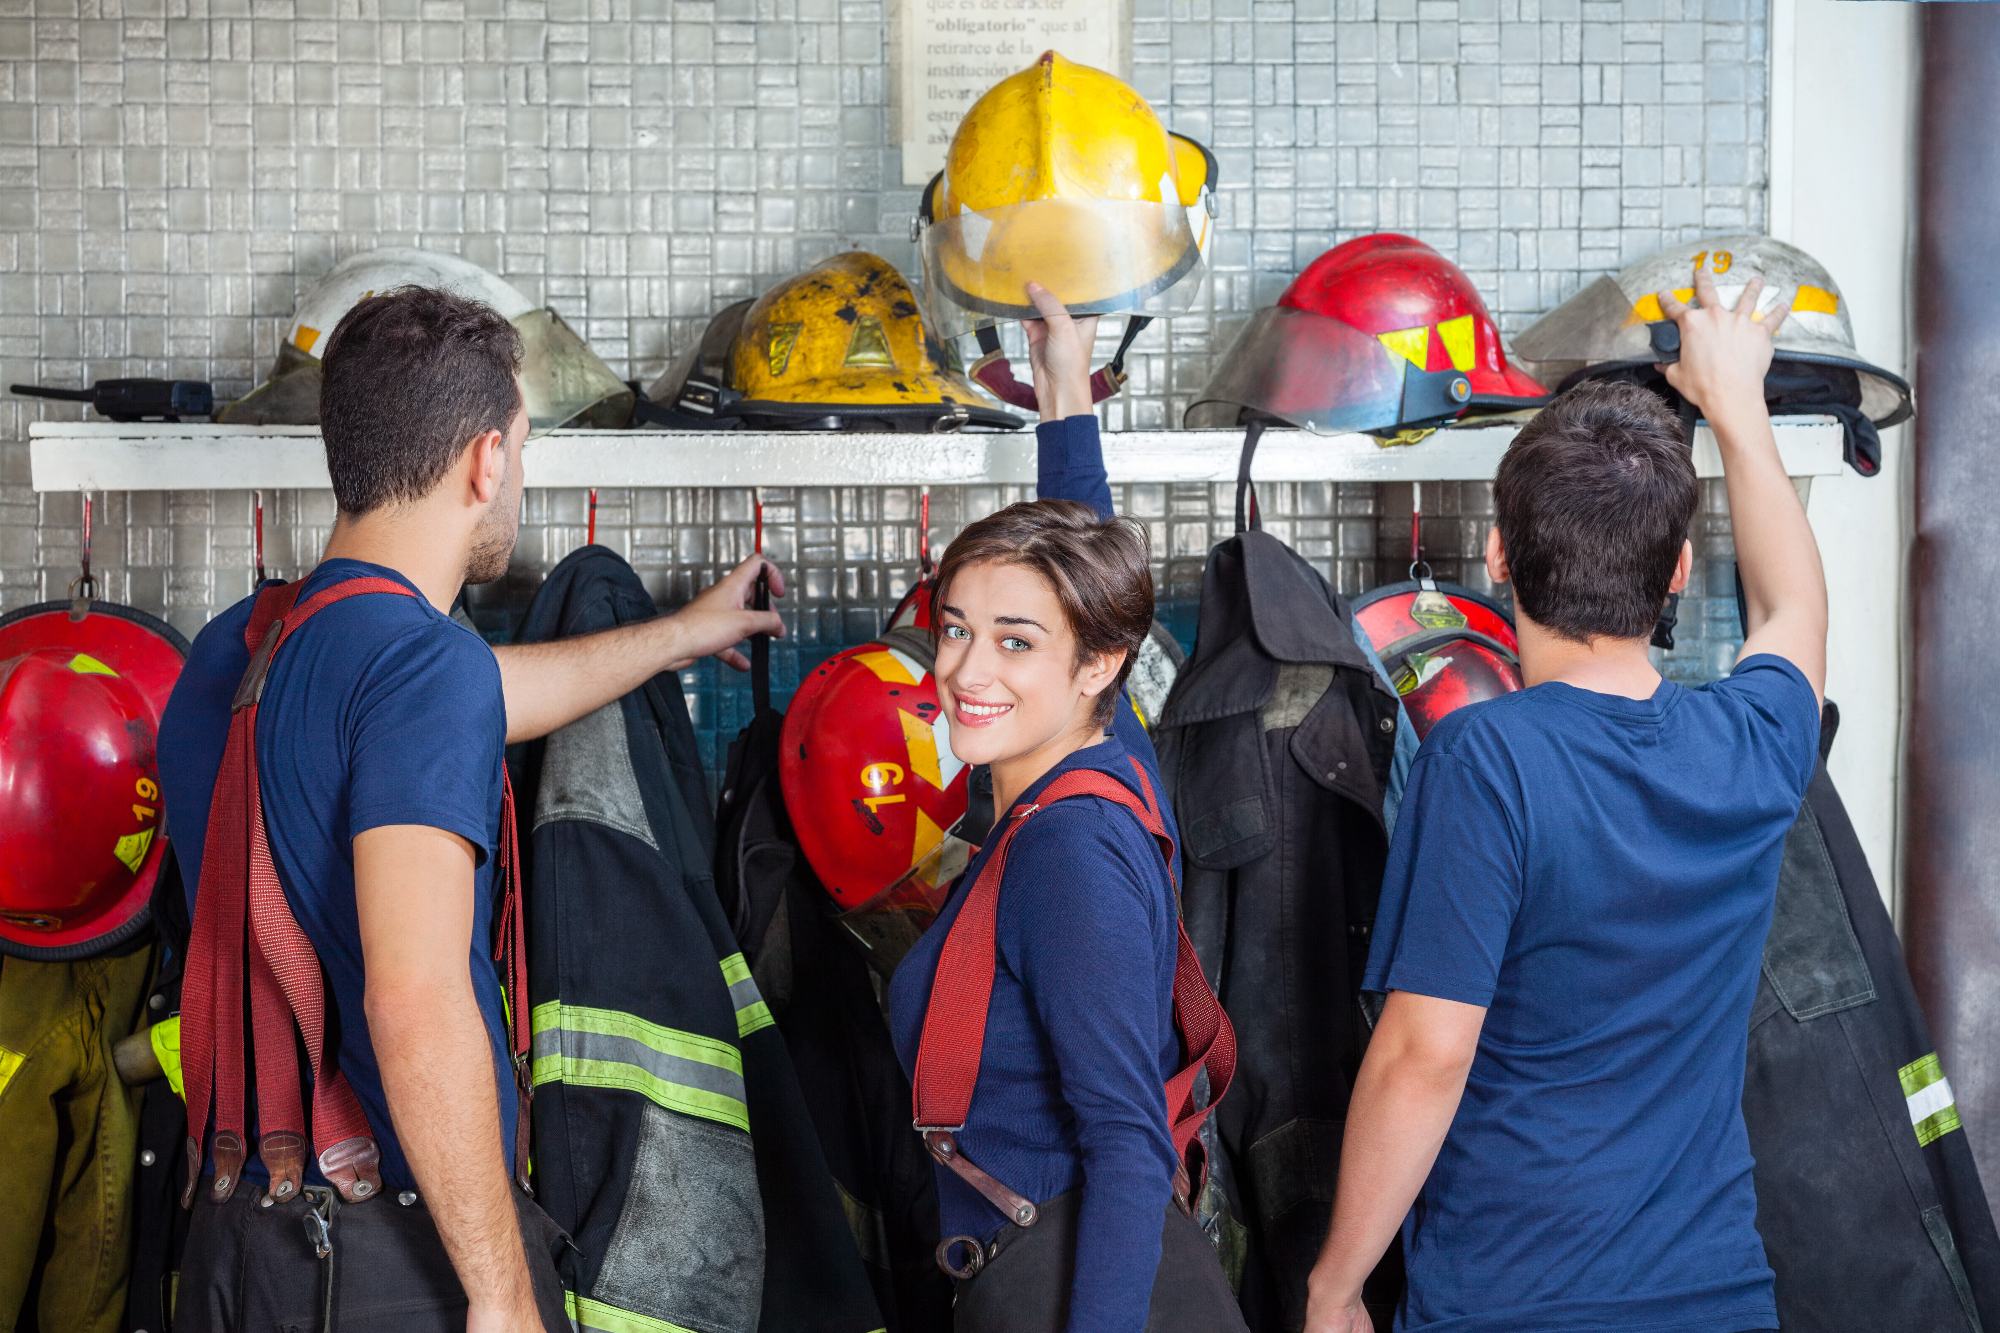 Gasilsko društvo podpira izobraževanje in usposabljanje gasilcev